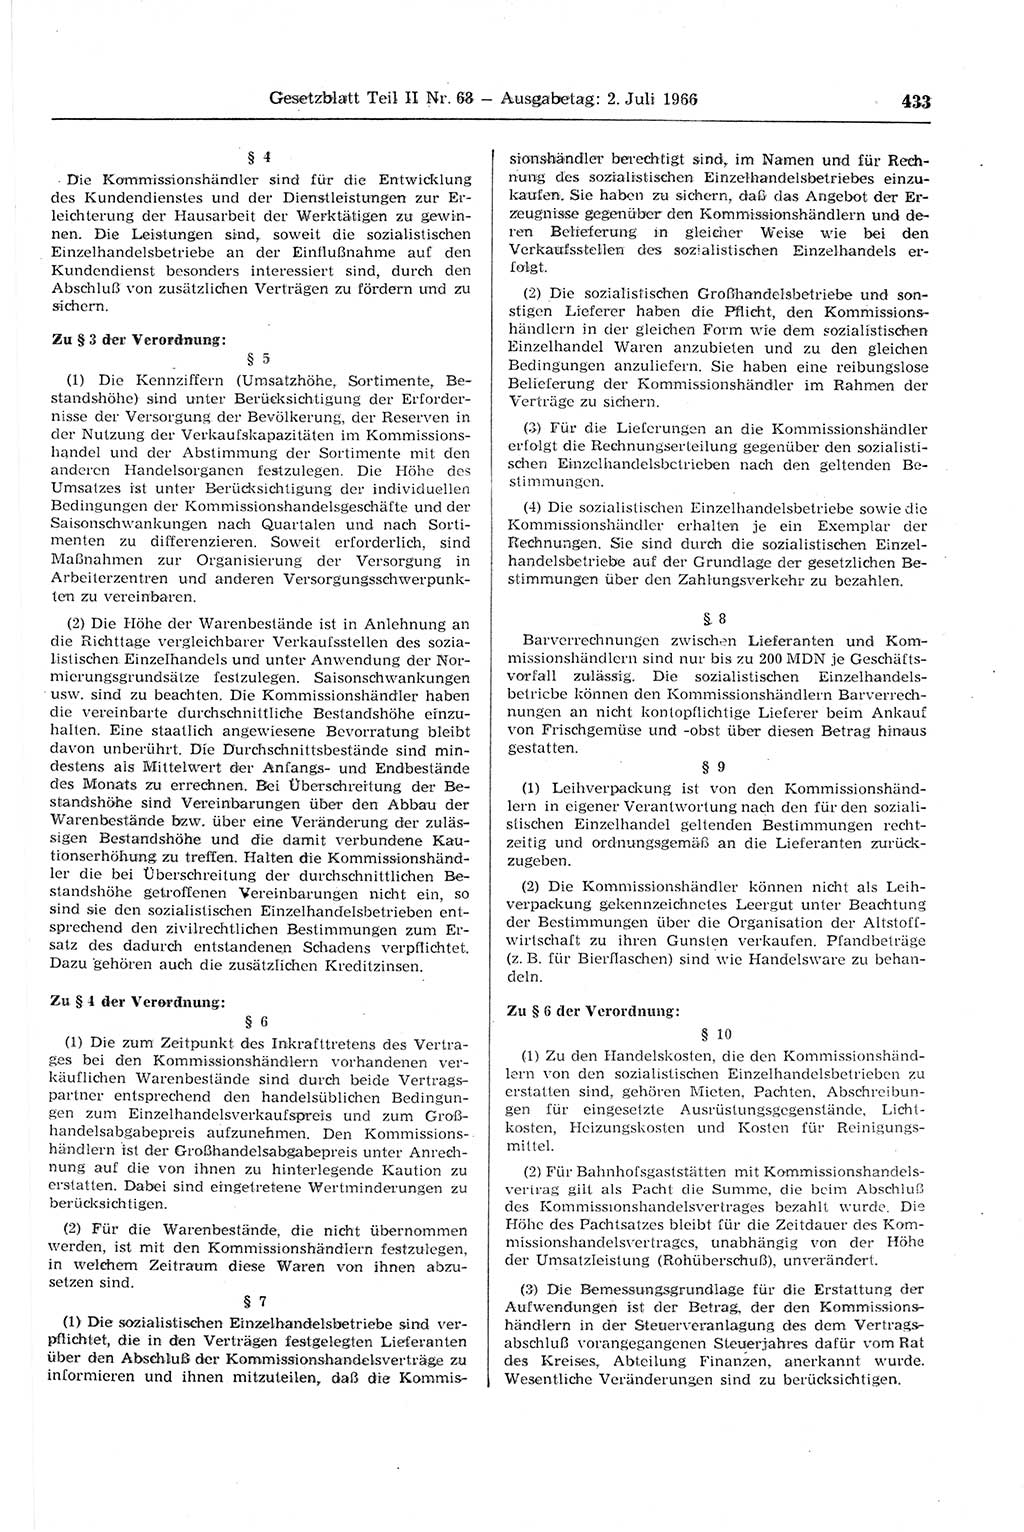 Gesetzblatt (GBl.) der Deutschen Demokratischen Republik (DDR) Teil ⅠⅠ 1966, Seite 433 (GBl. DDR ⅠⅠ 1966, S. 433)